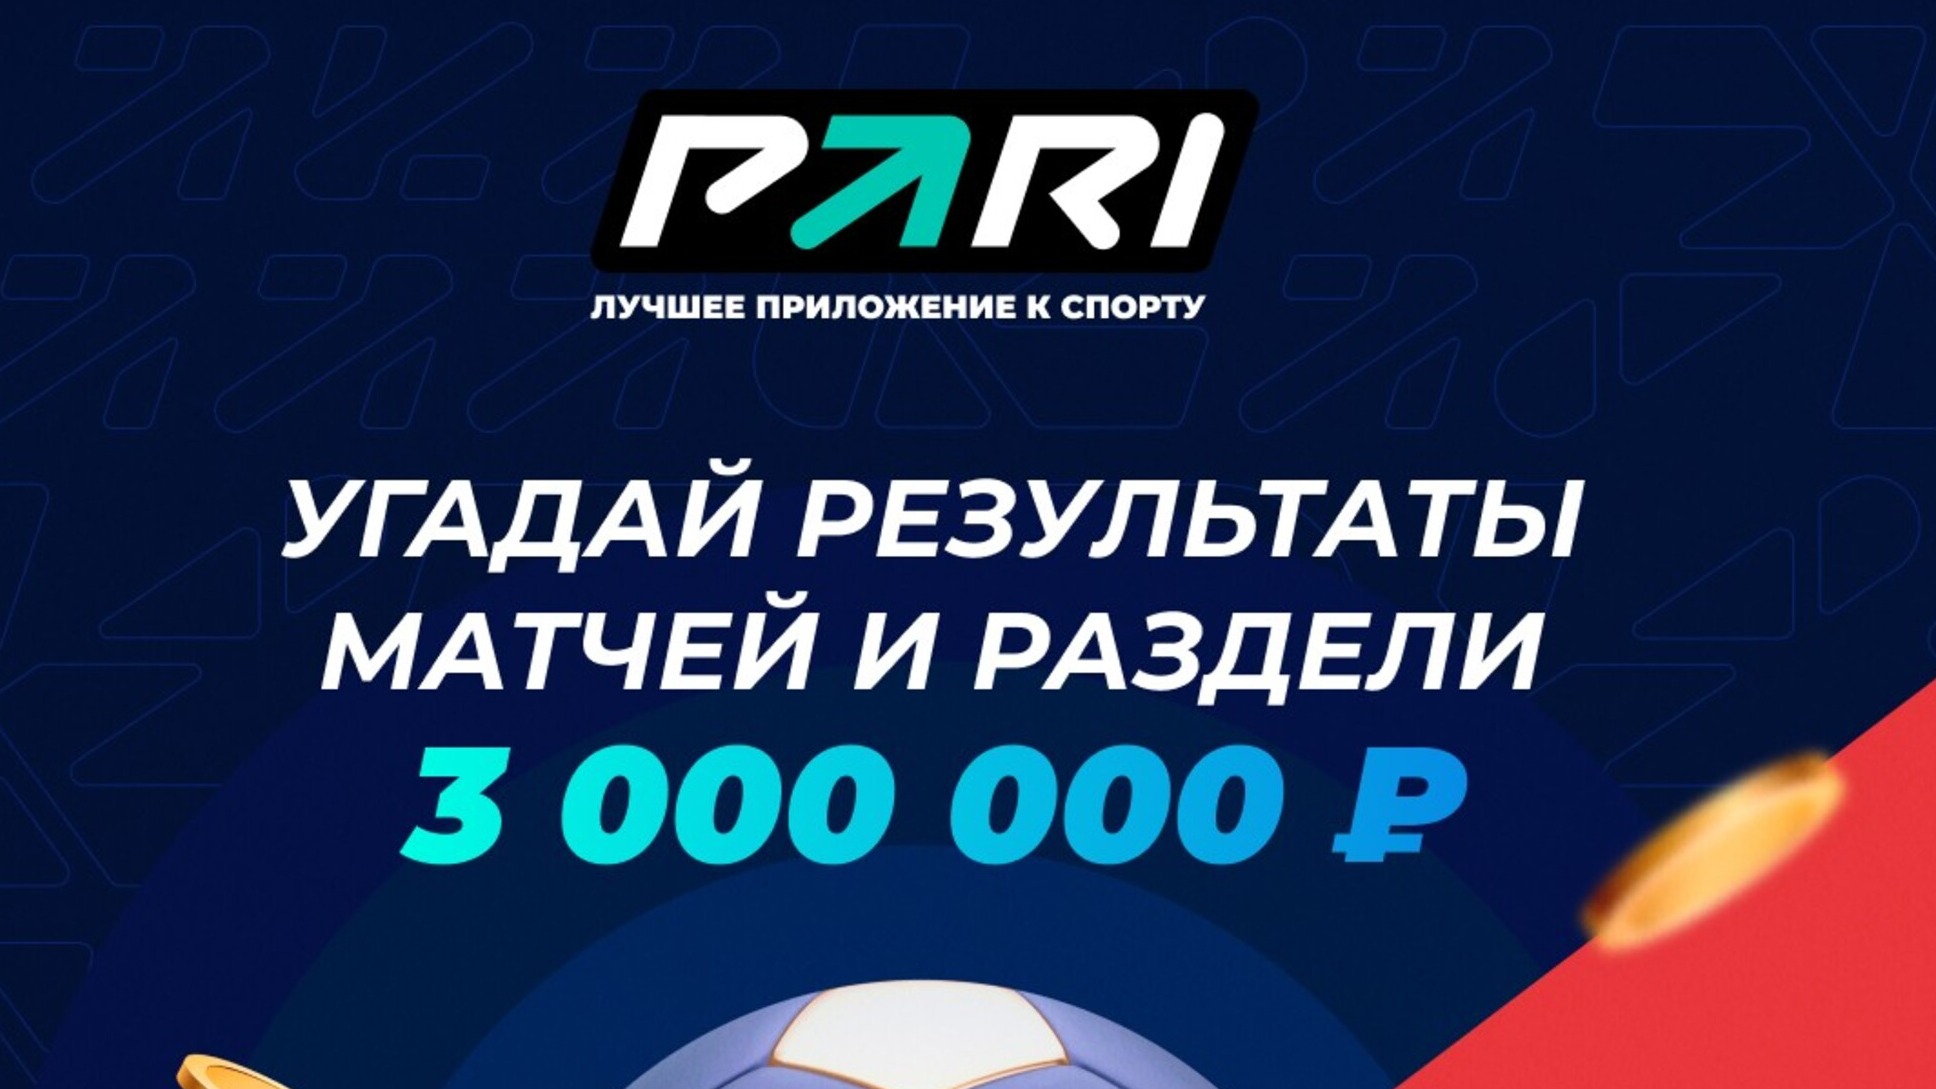 Pari разыгрывает фрибеты на сумму до 3 млн рублей за верные прогнозы